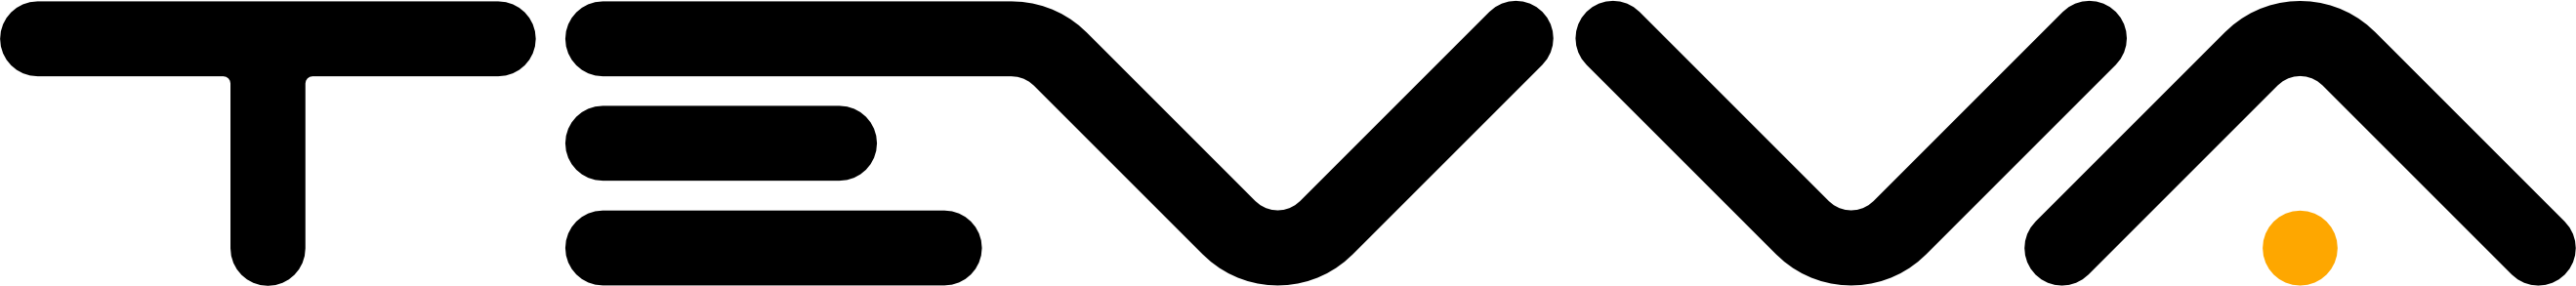 Tevva black logo with orange dot 1